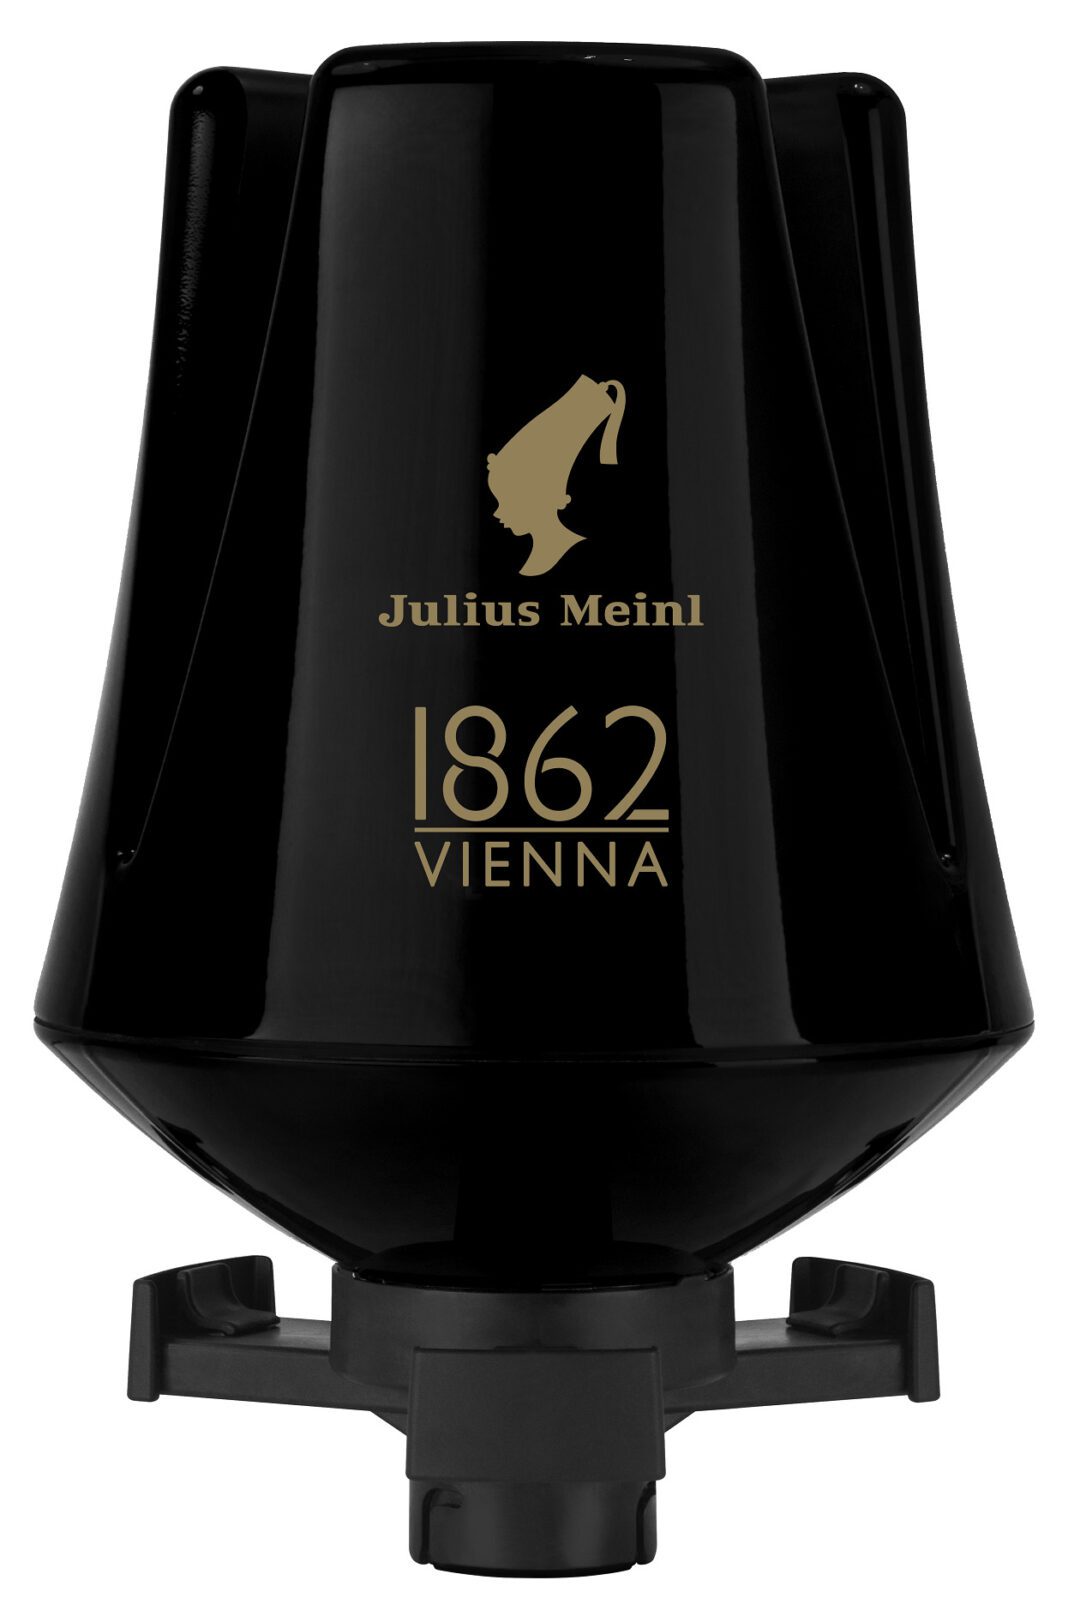 Julius Meinl 1862 Vienna